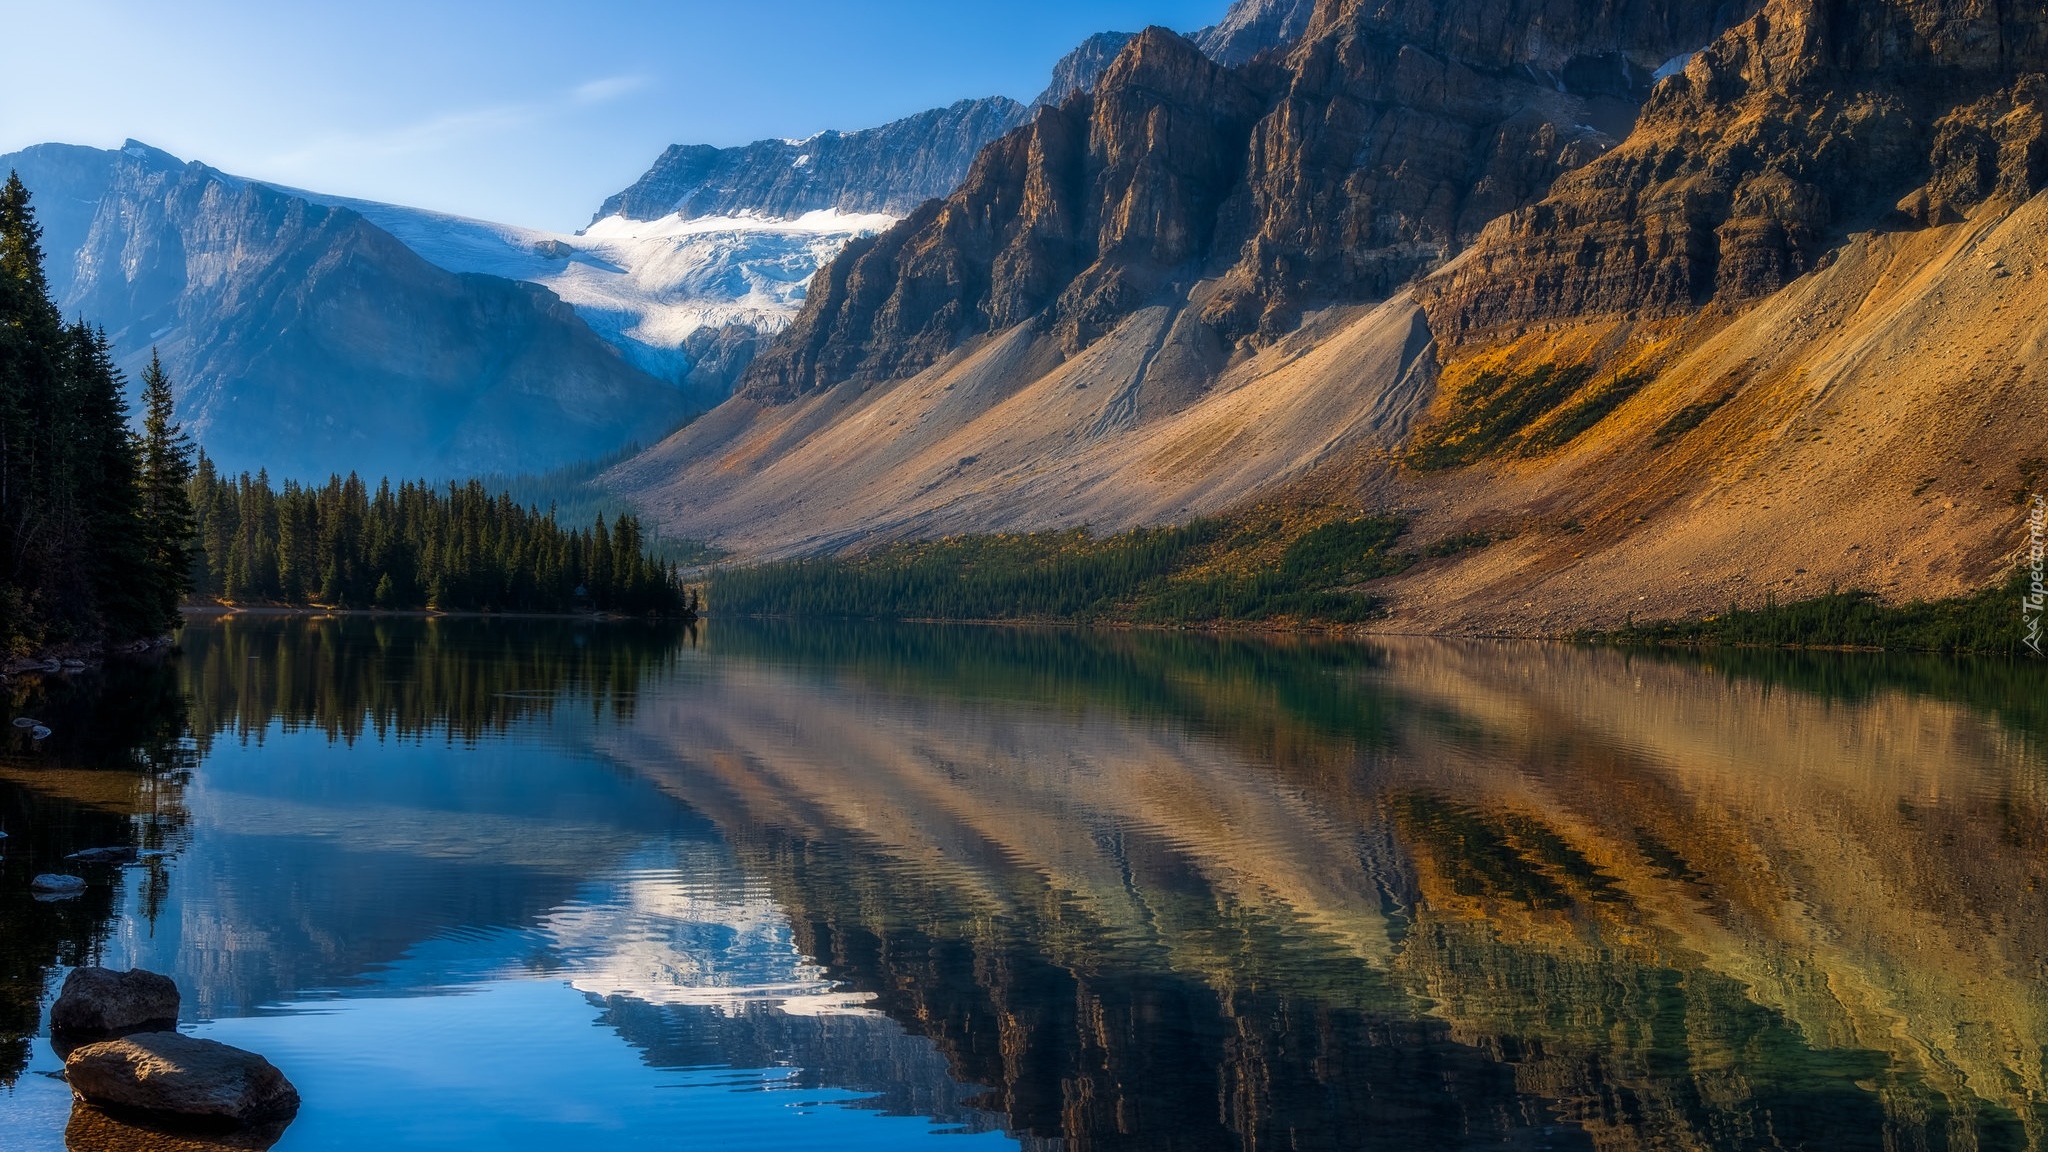 Park Narodowy Banff, Góry, Drzewa, Jezioro, Bow Lake, Lodowiec, Crowfoot Glacier, Alberta, Kanada